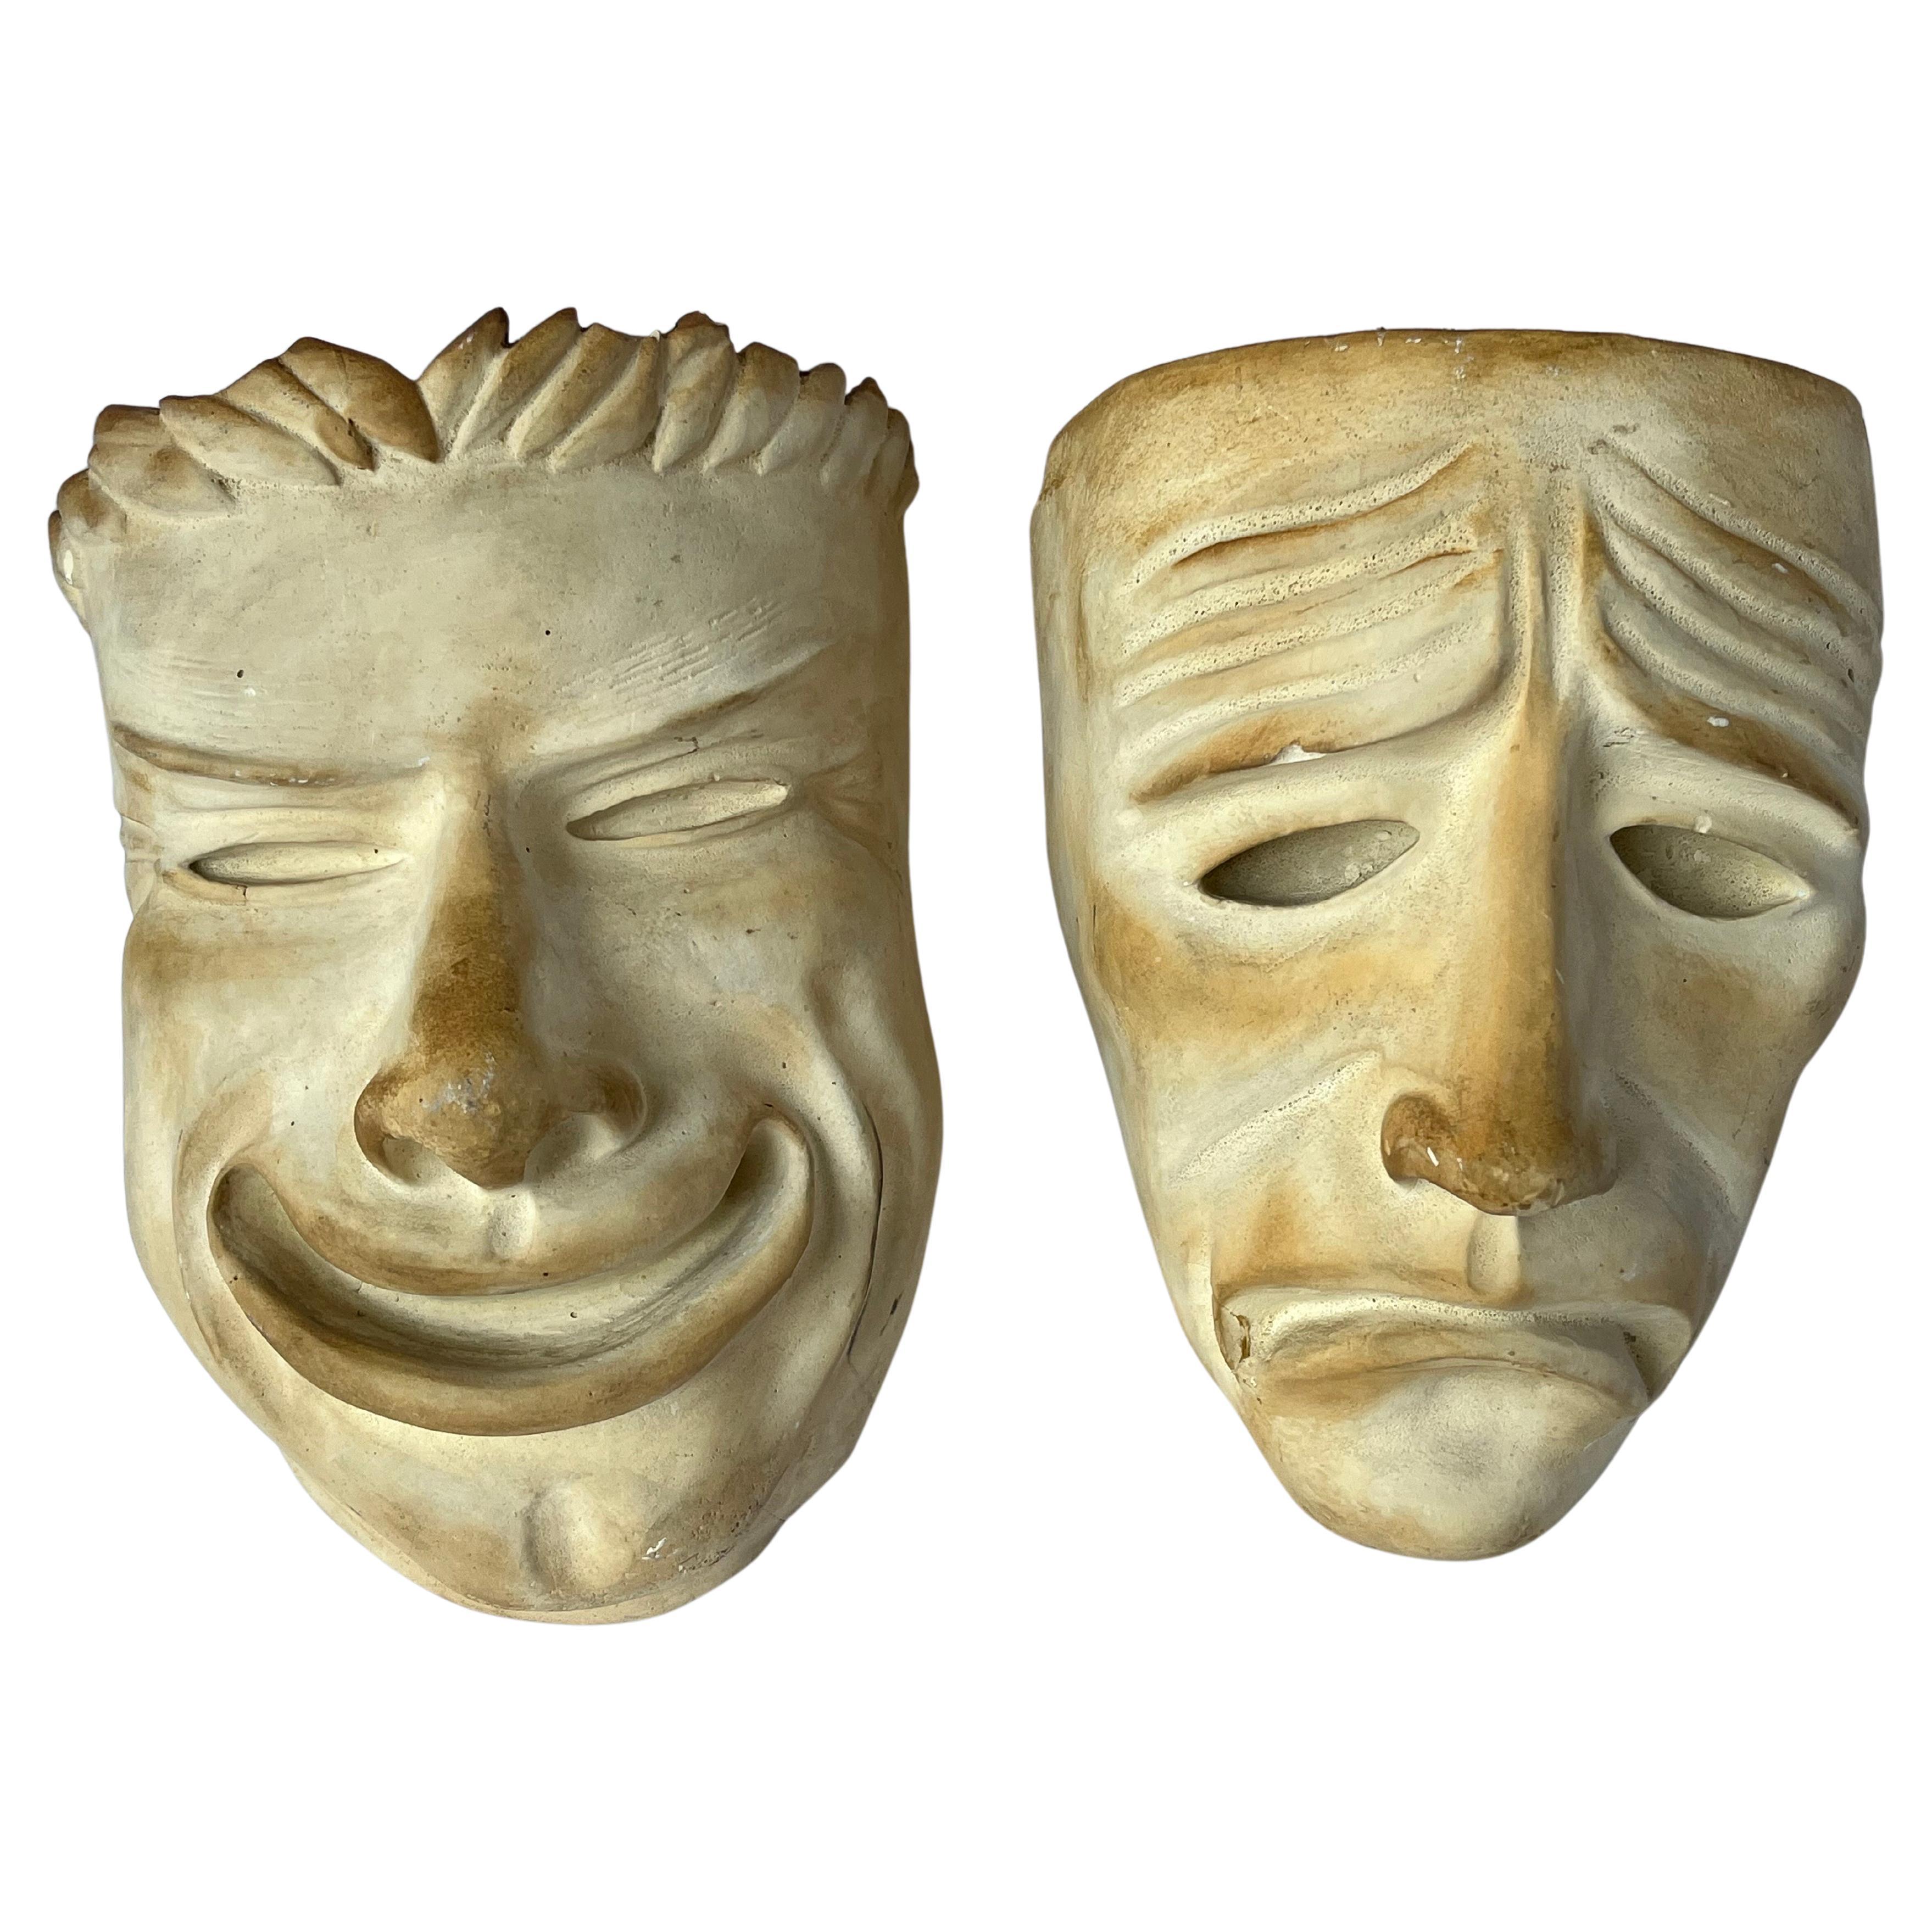 Feine fast lebensgroße 1940er Jahre Gips Komödie und Tragödie Theater Masken Skulpturen